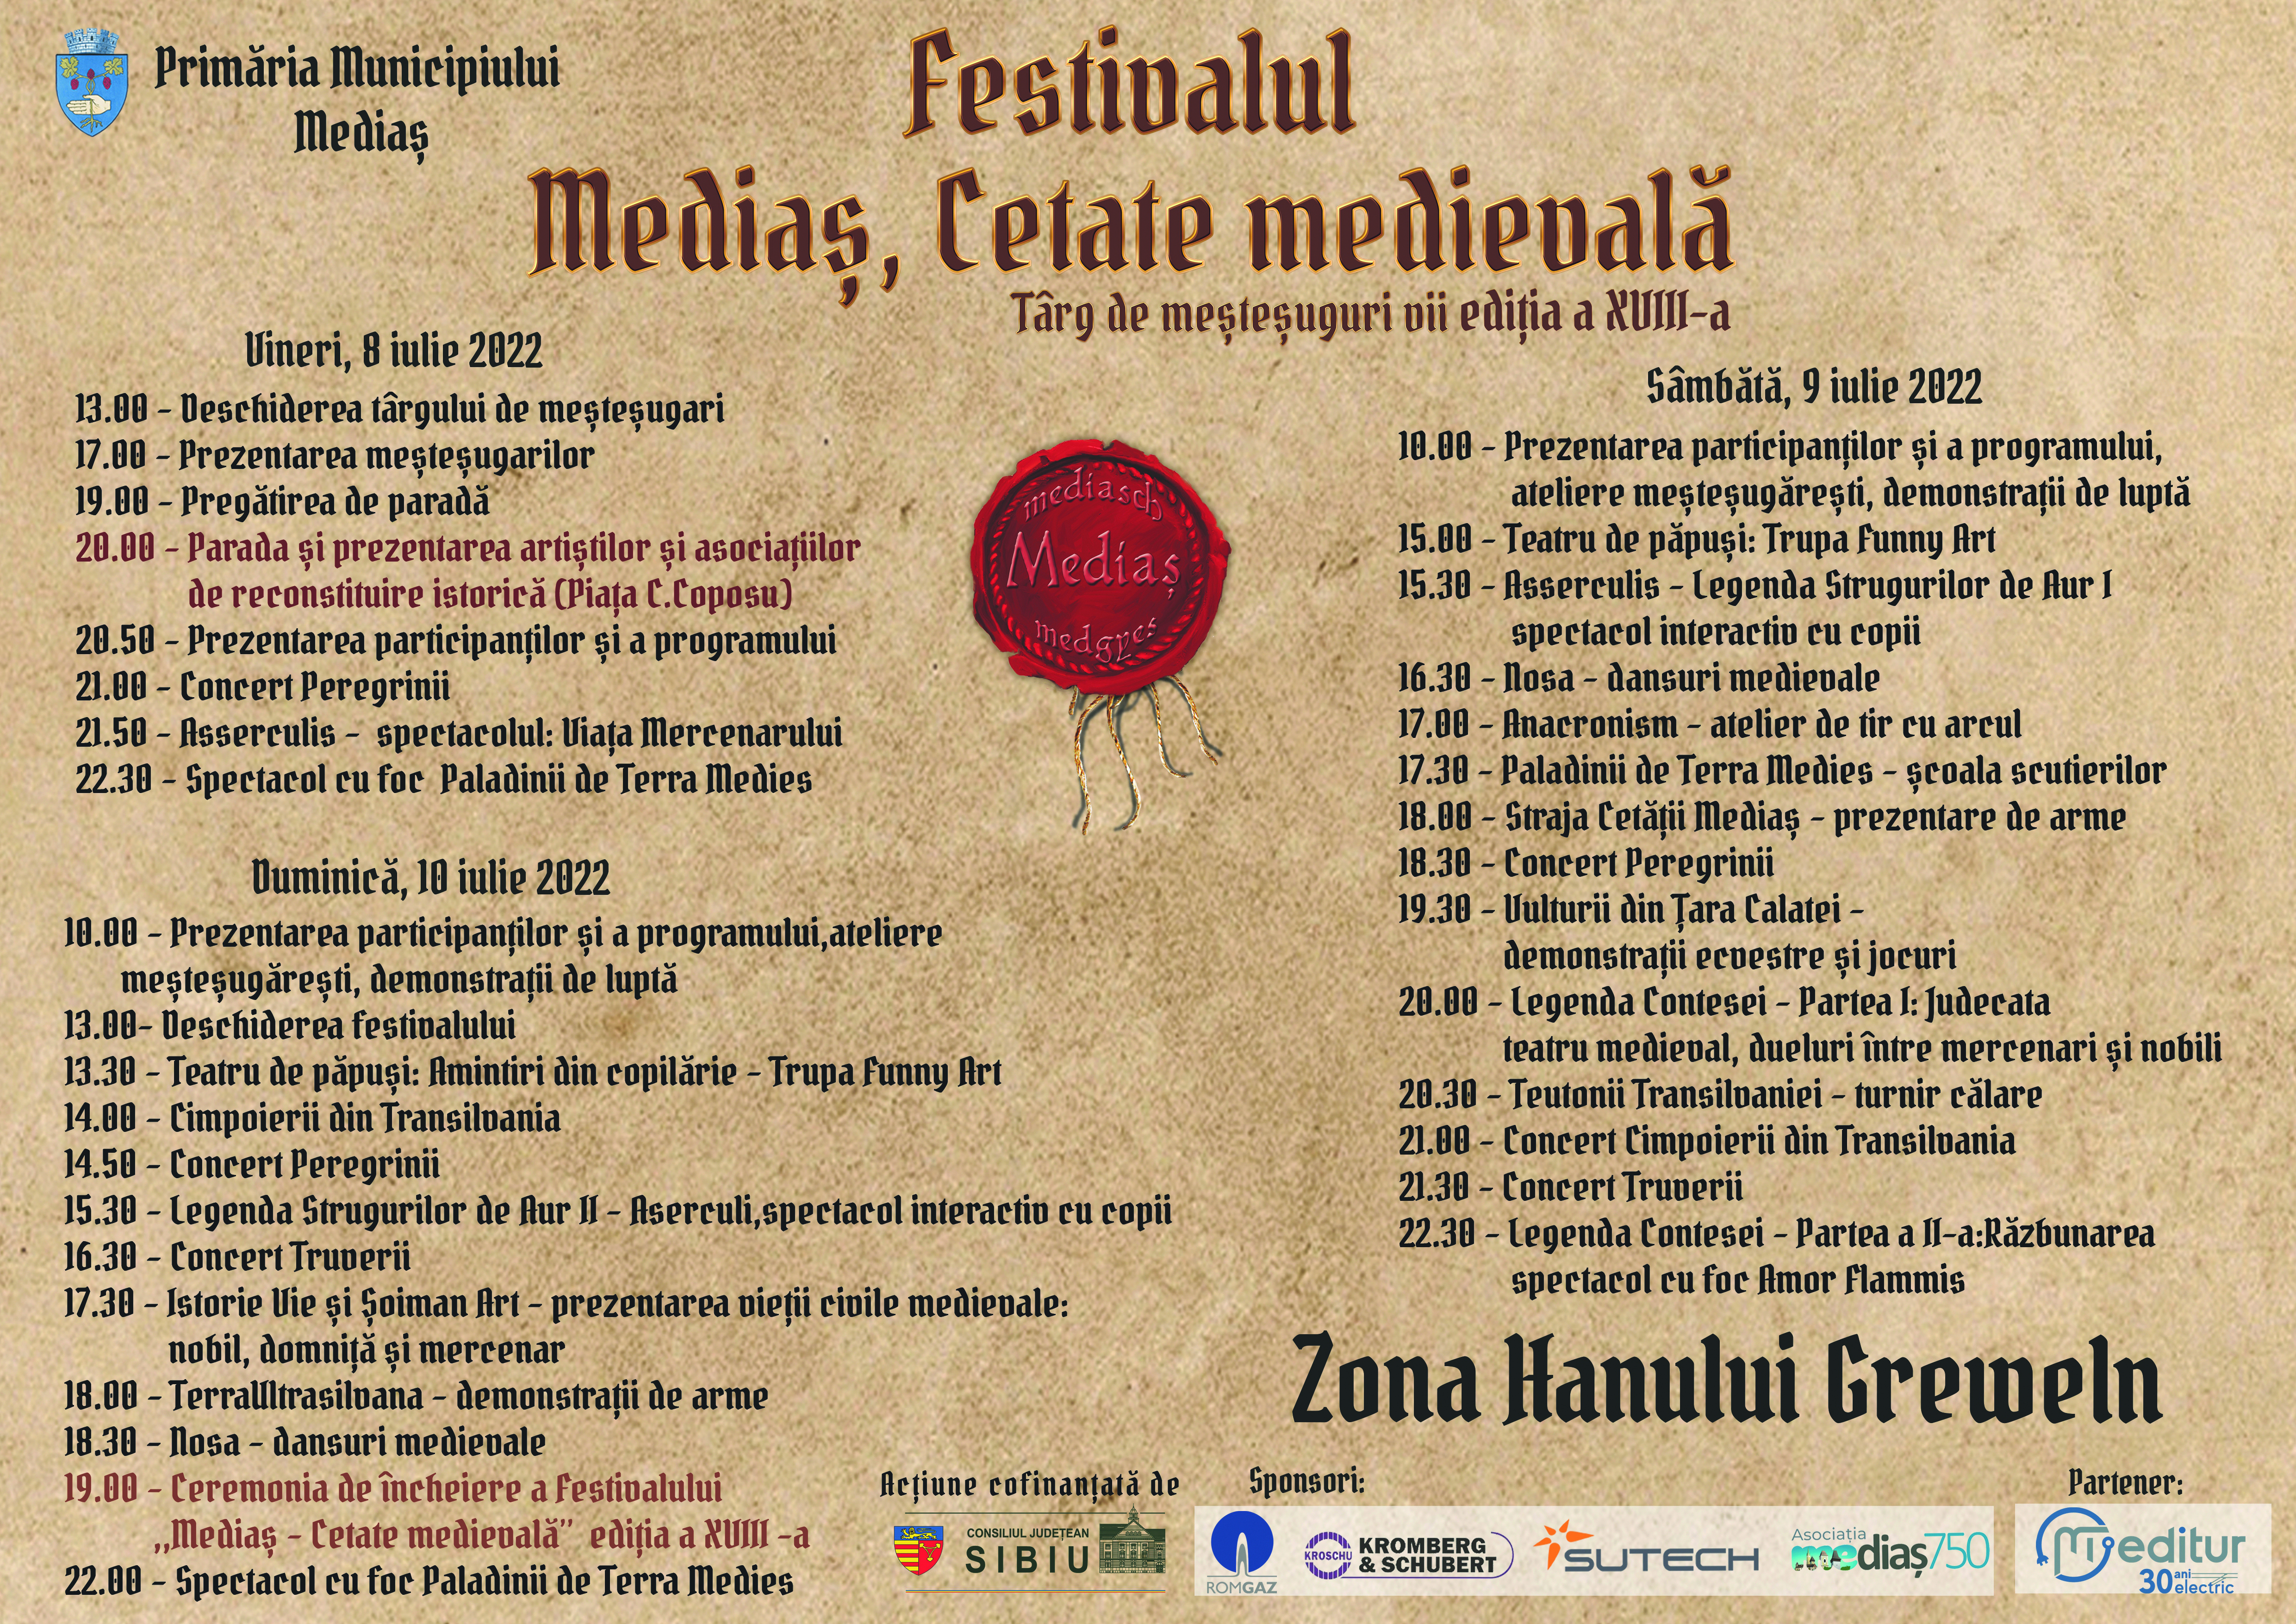 Începe Festivalul ,,Mediaș, Cetate medievală“. Programul evenimentului